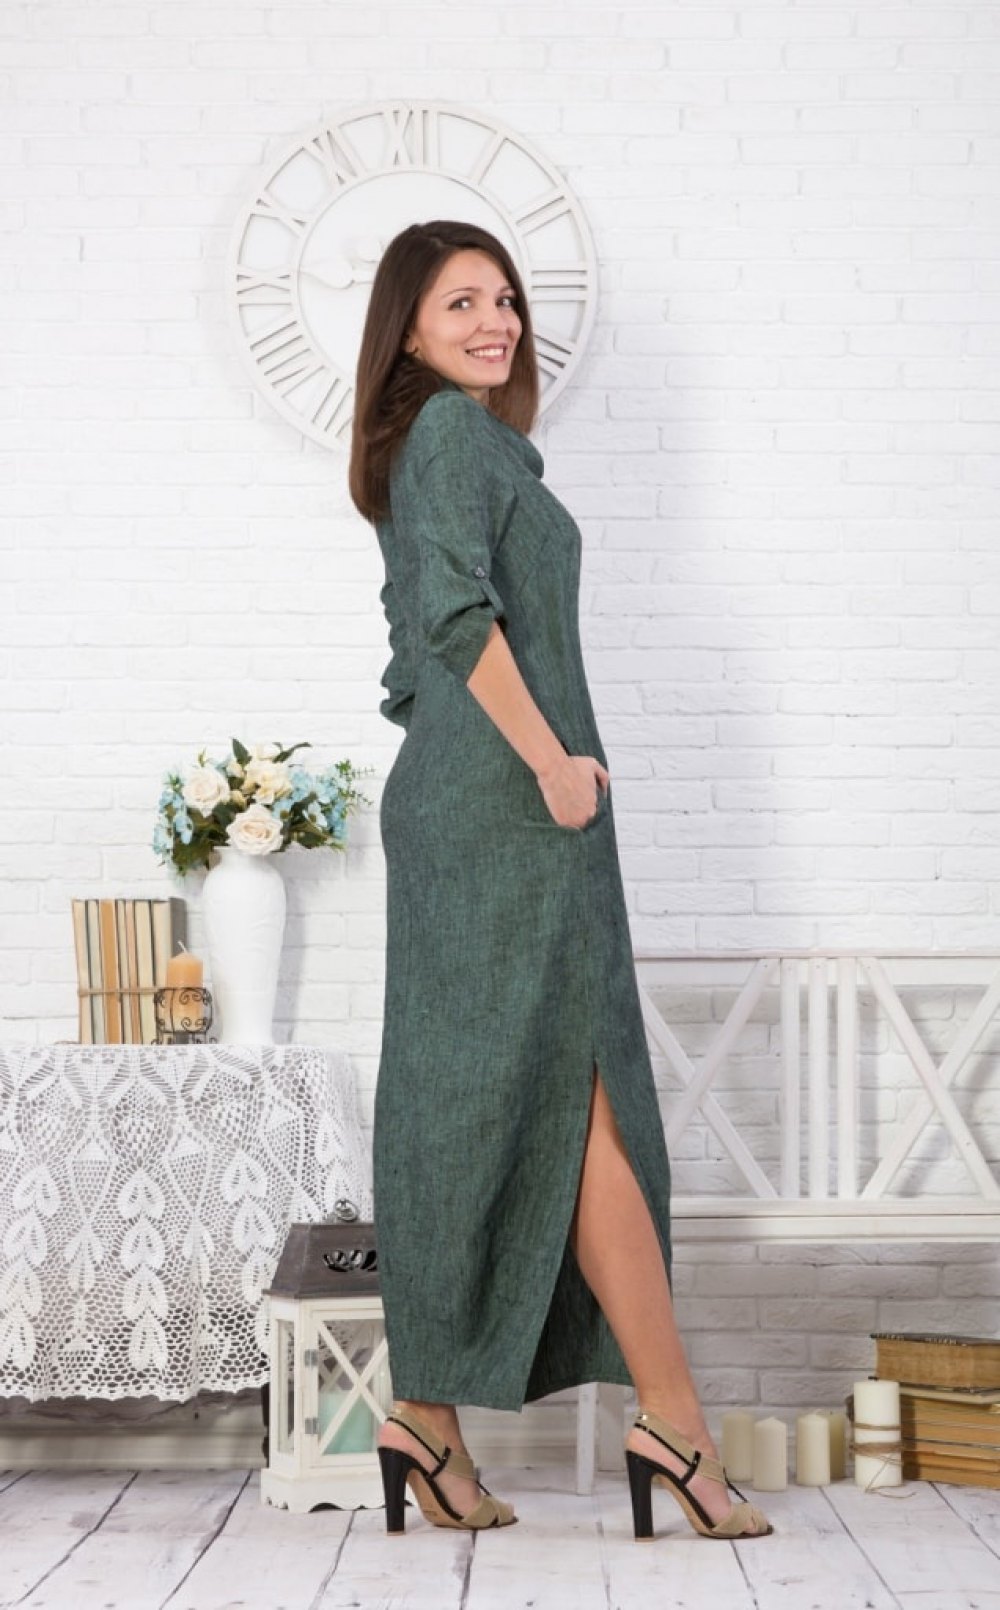 Платье женское "Соло" модель 378/5 зеленый меланж